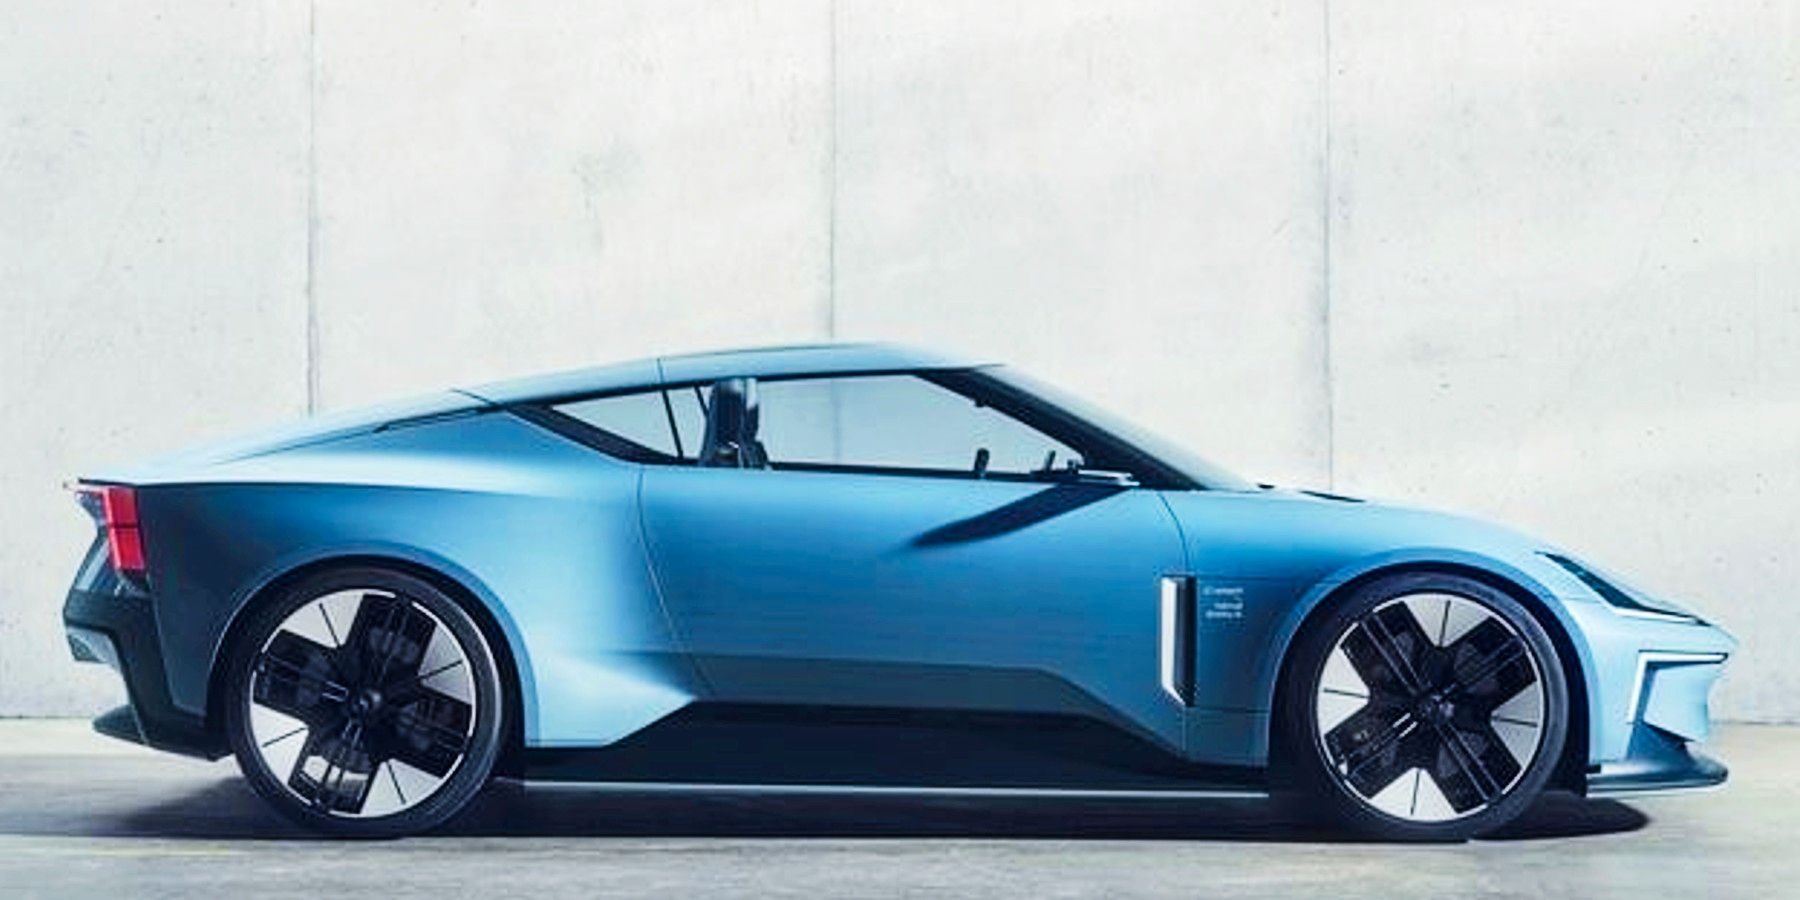 Olvídese del Tesla Roadster: el nuevo auto deportivo de Polestar se ve increíble